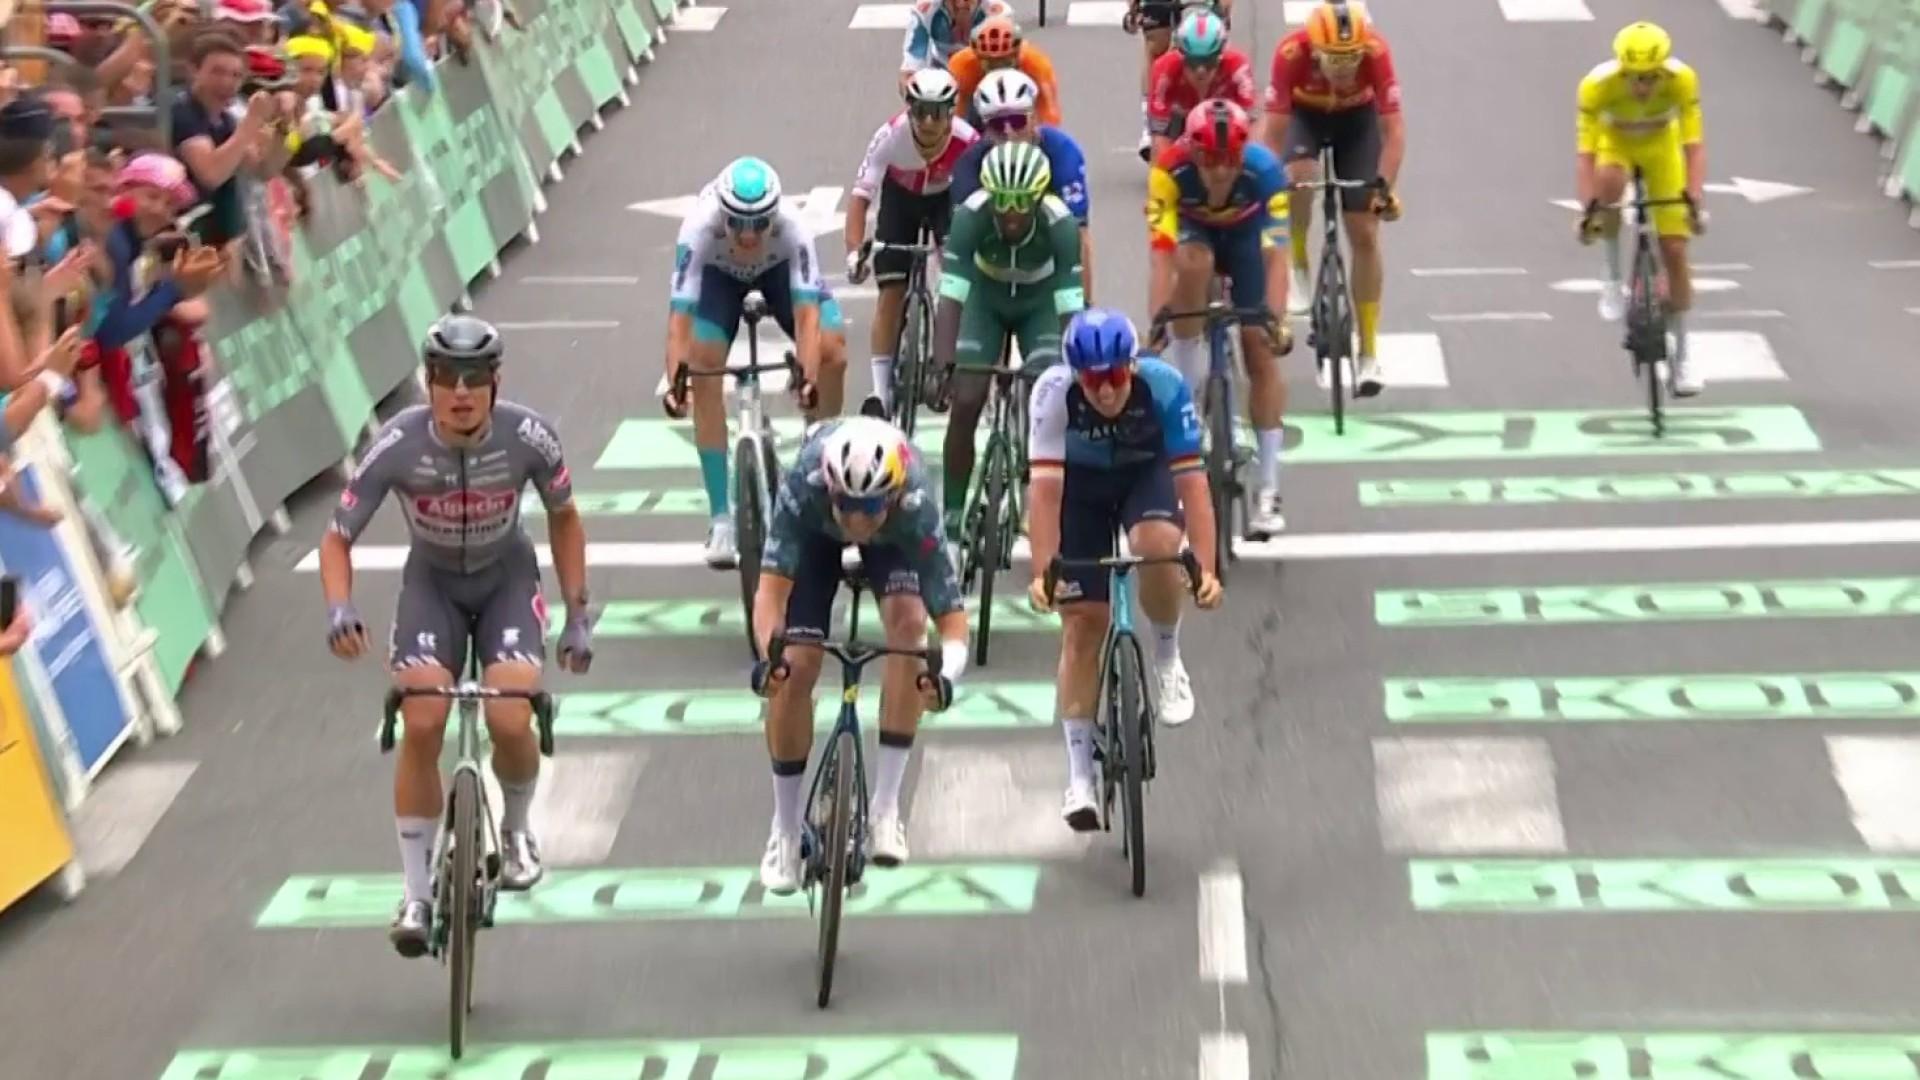 Jasper Philipsen (Alpecin - Deceuninck) a remporté au sprint la 13e étape du Tour de France dans un emballage final marqué par une chute. Le Belge a devancé Wout van Aert (Visma | Lease a Bike) et Pascal Ackermann (Israel - Premier Tech).